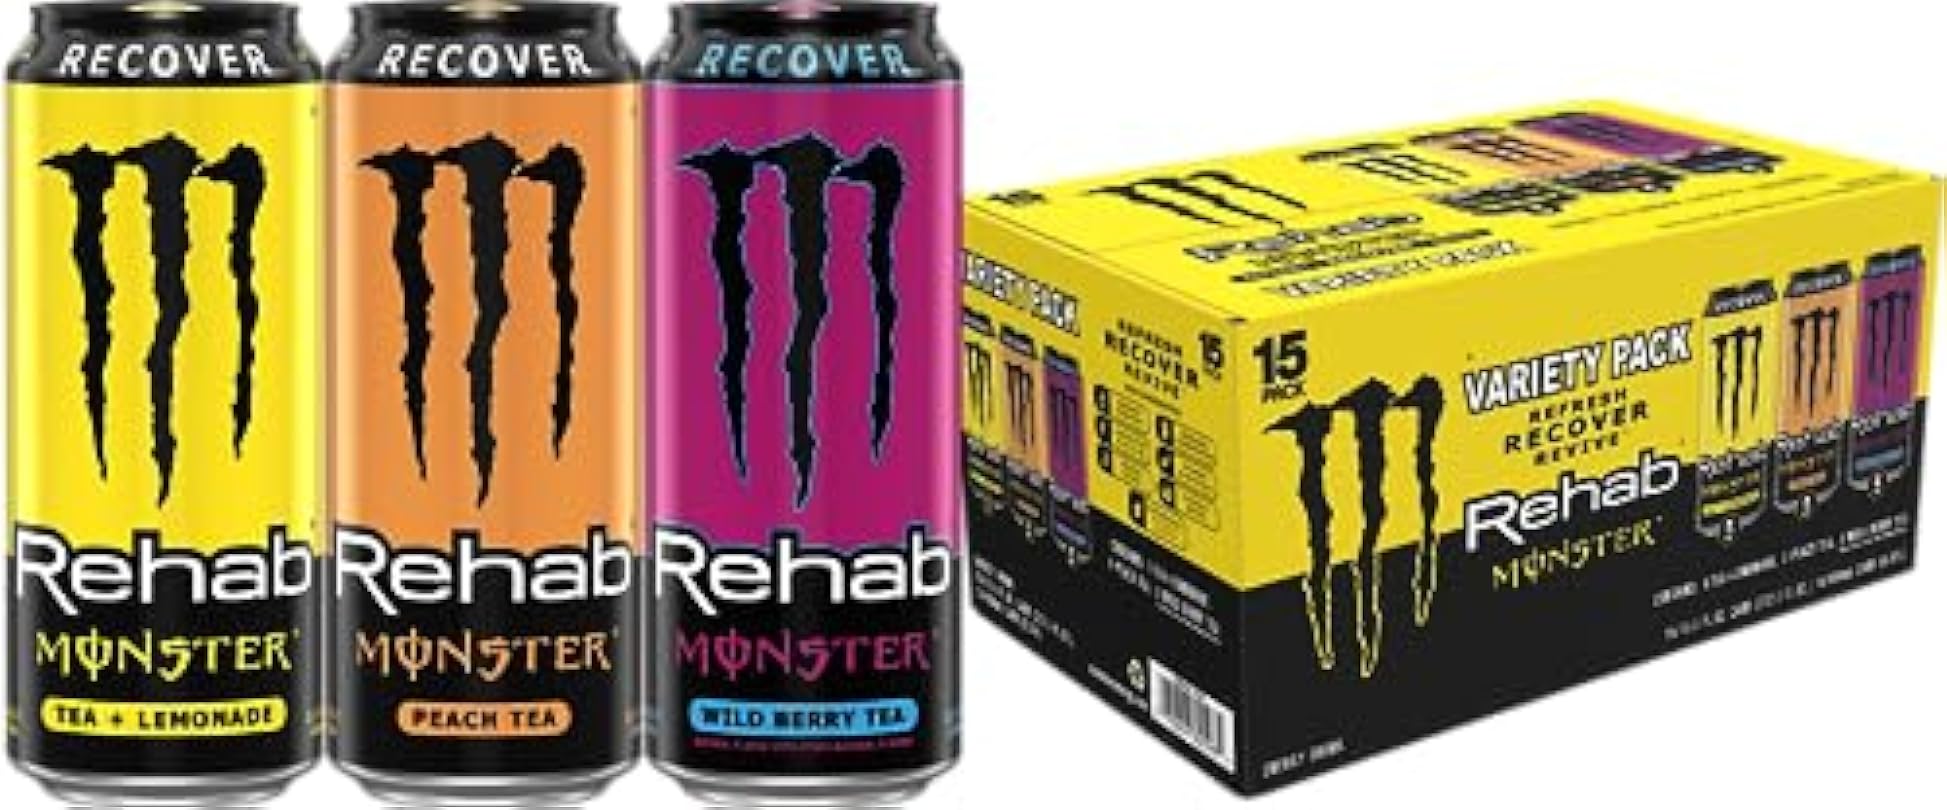 Monster Energy Rehab Tea + Lemonade, Peach Tea, Wild Berry Tea, Variety Pack, Energy Iced Tea,15.5 Ounce (Pack of 15) 725179832